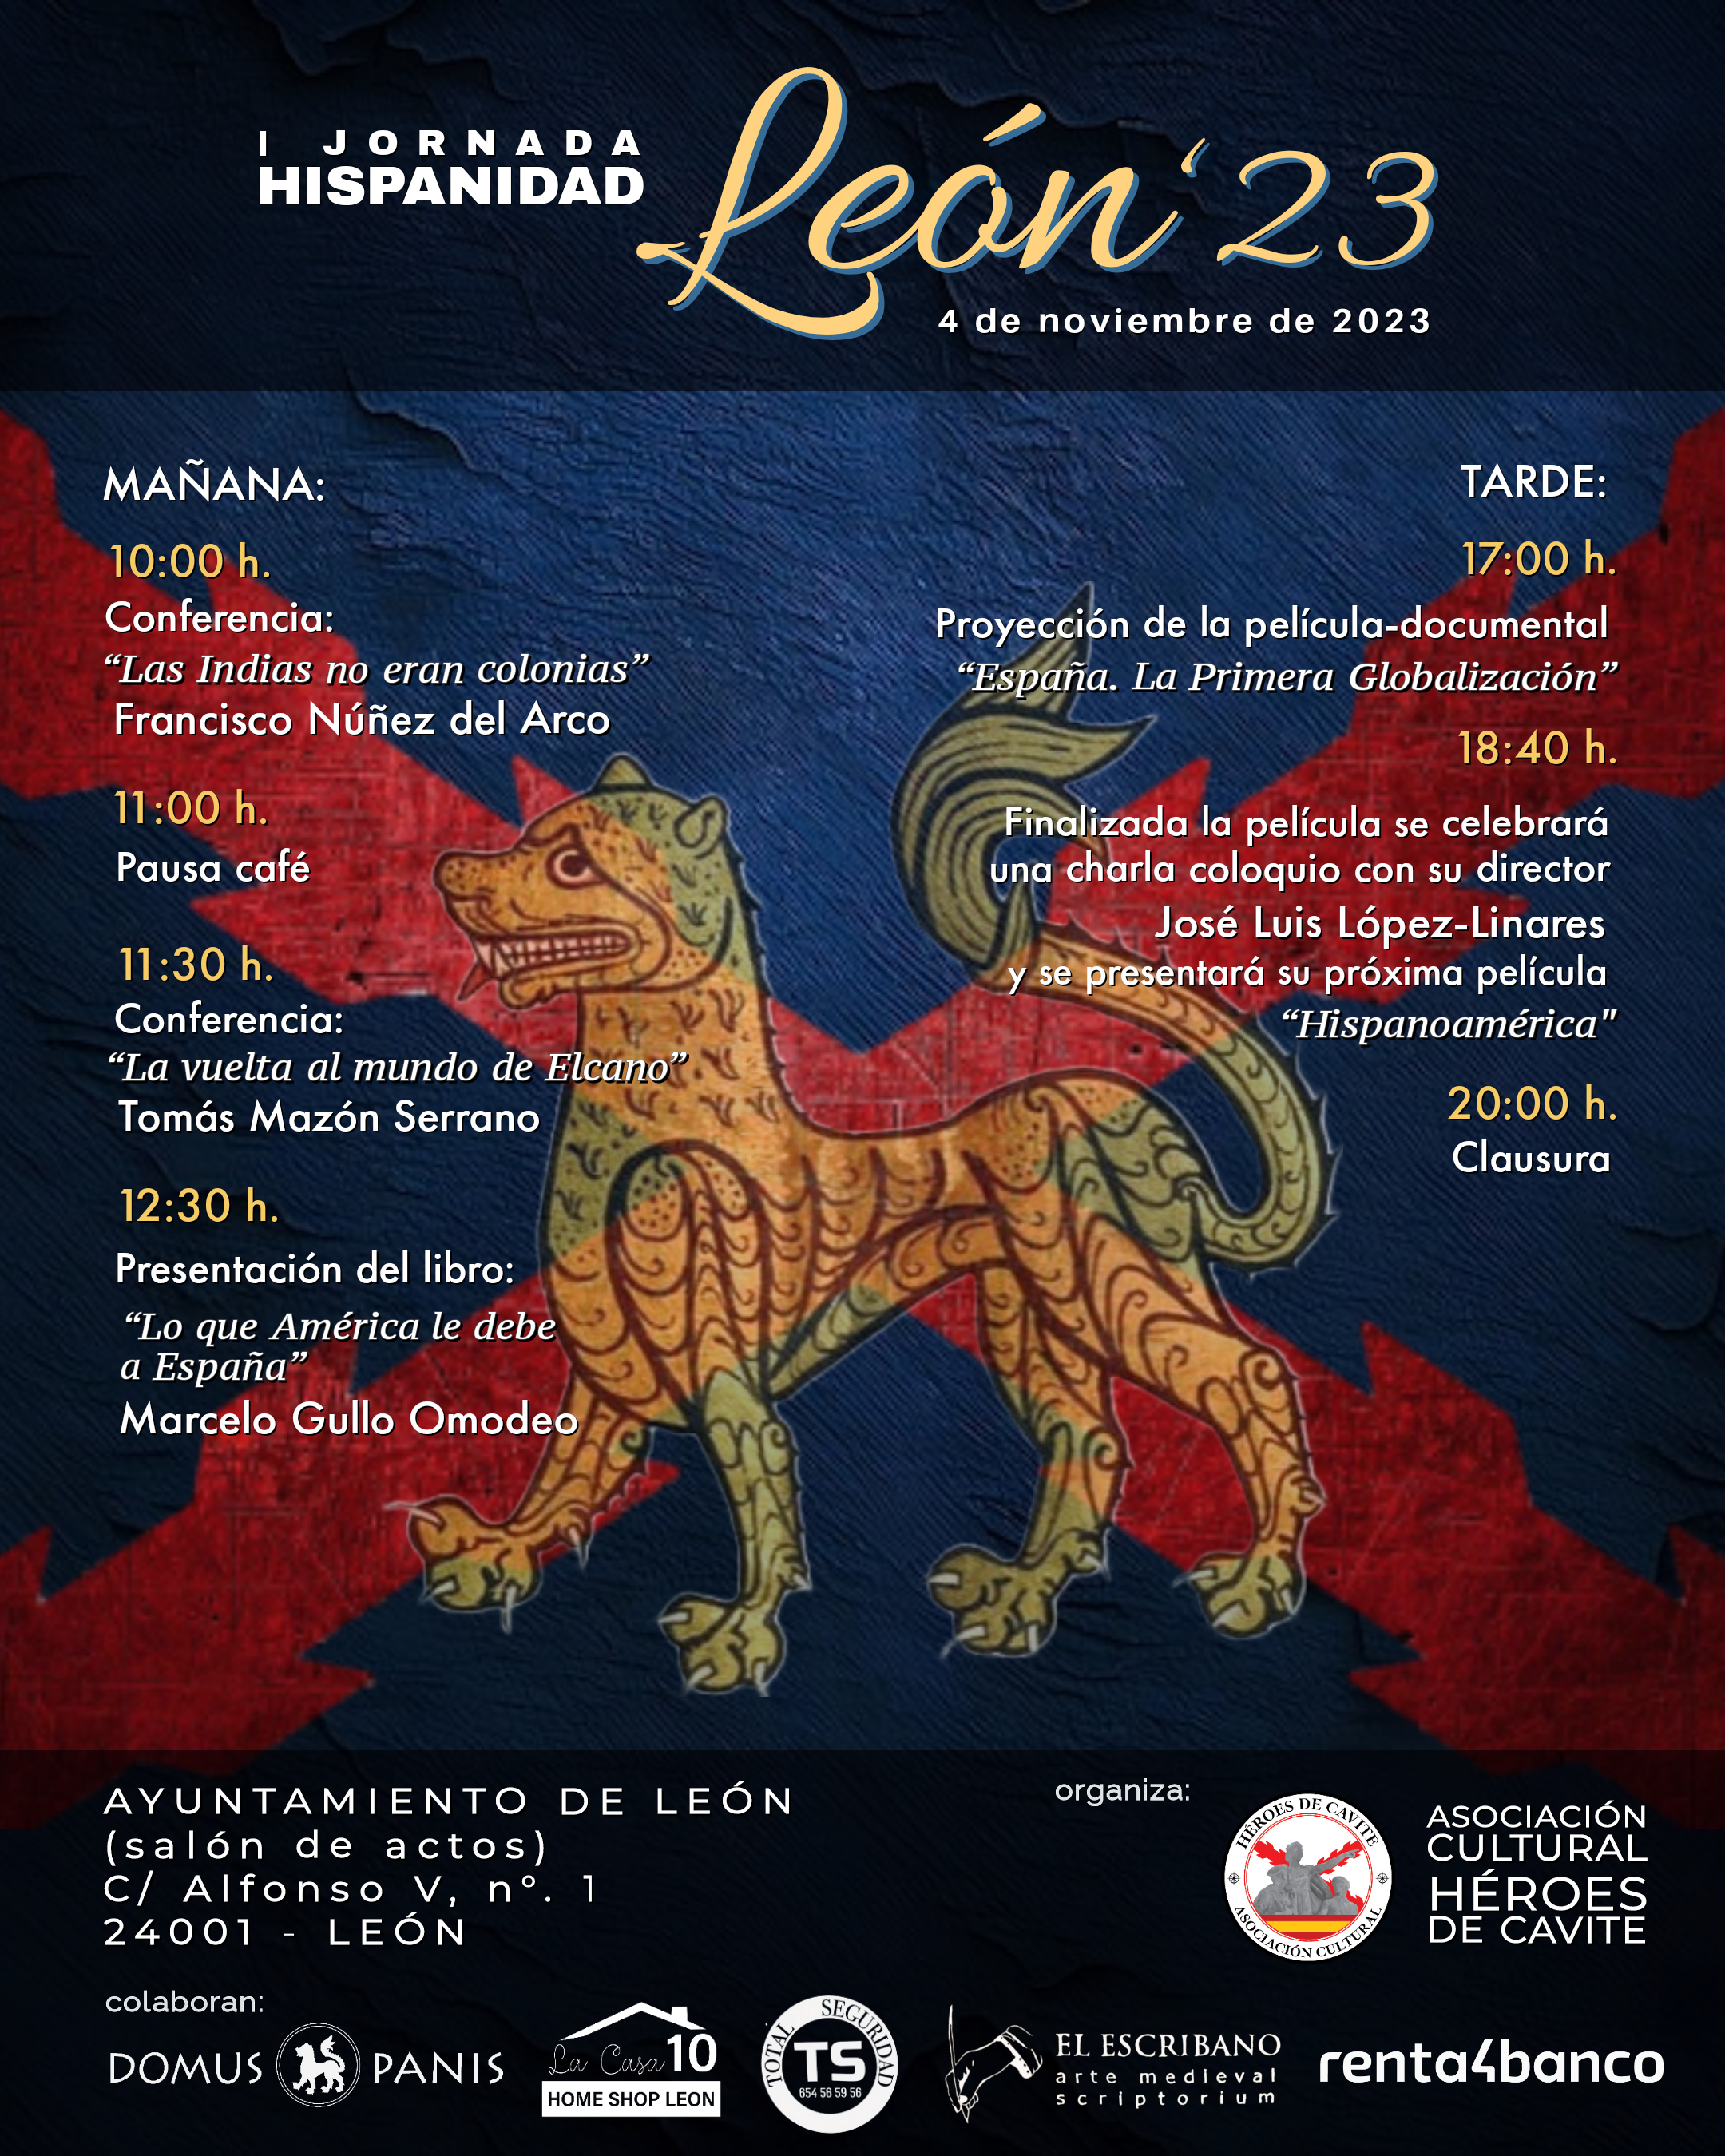 Cartel promocional de la I Jornada Hispanidad León 23.